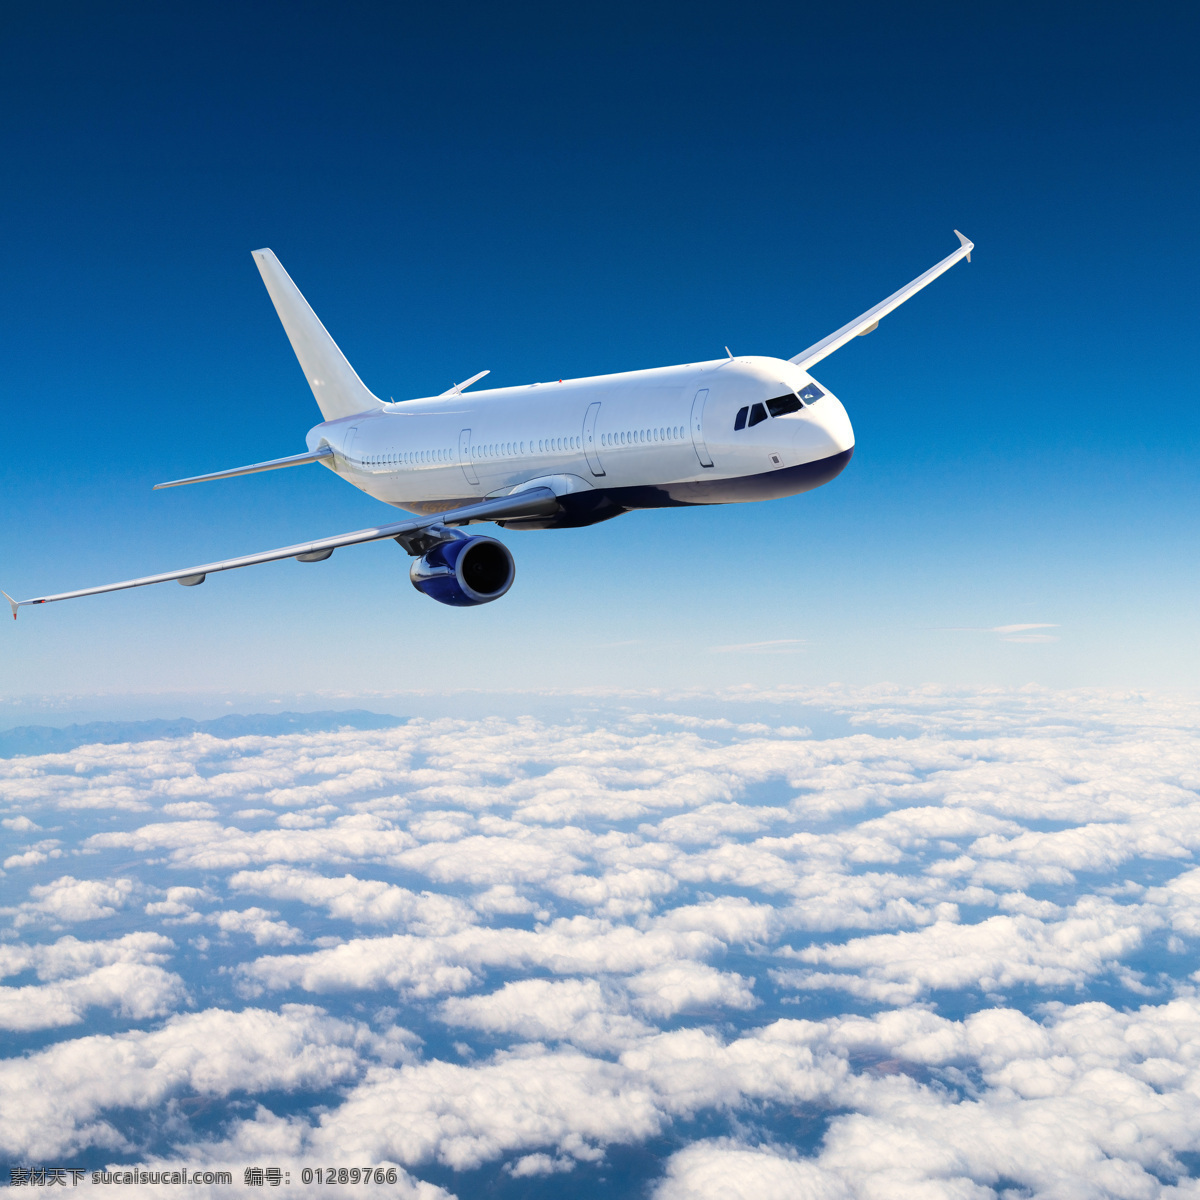 上 云霄 飞机 客机 航空飞机 交通工具 蓝天白云 飞机图片 现代科技